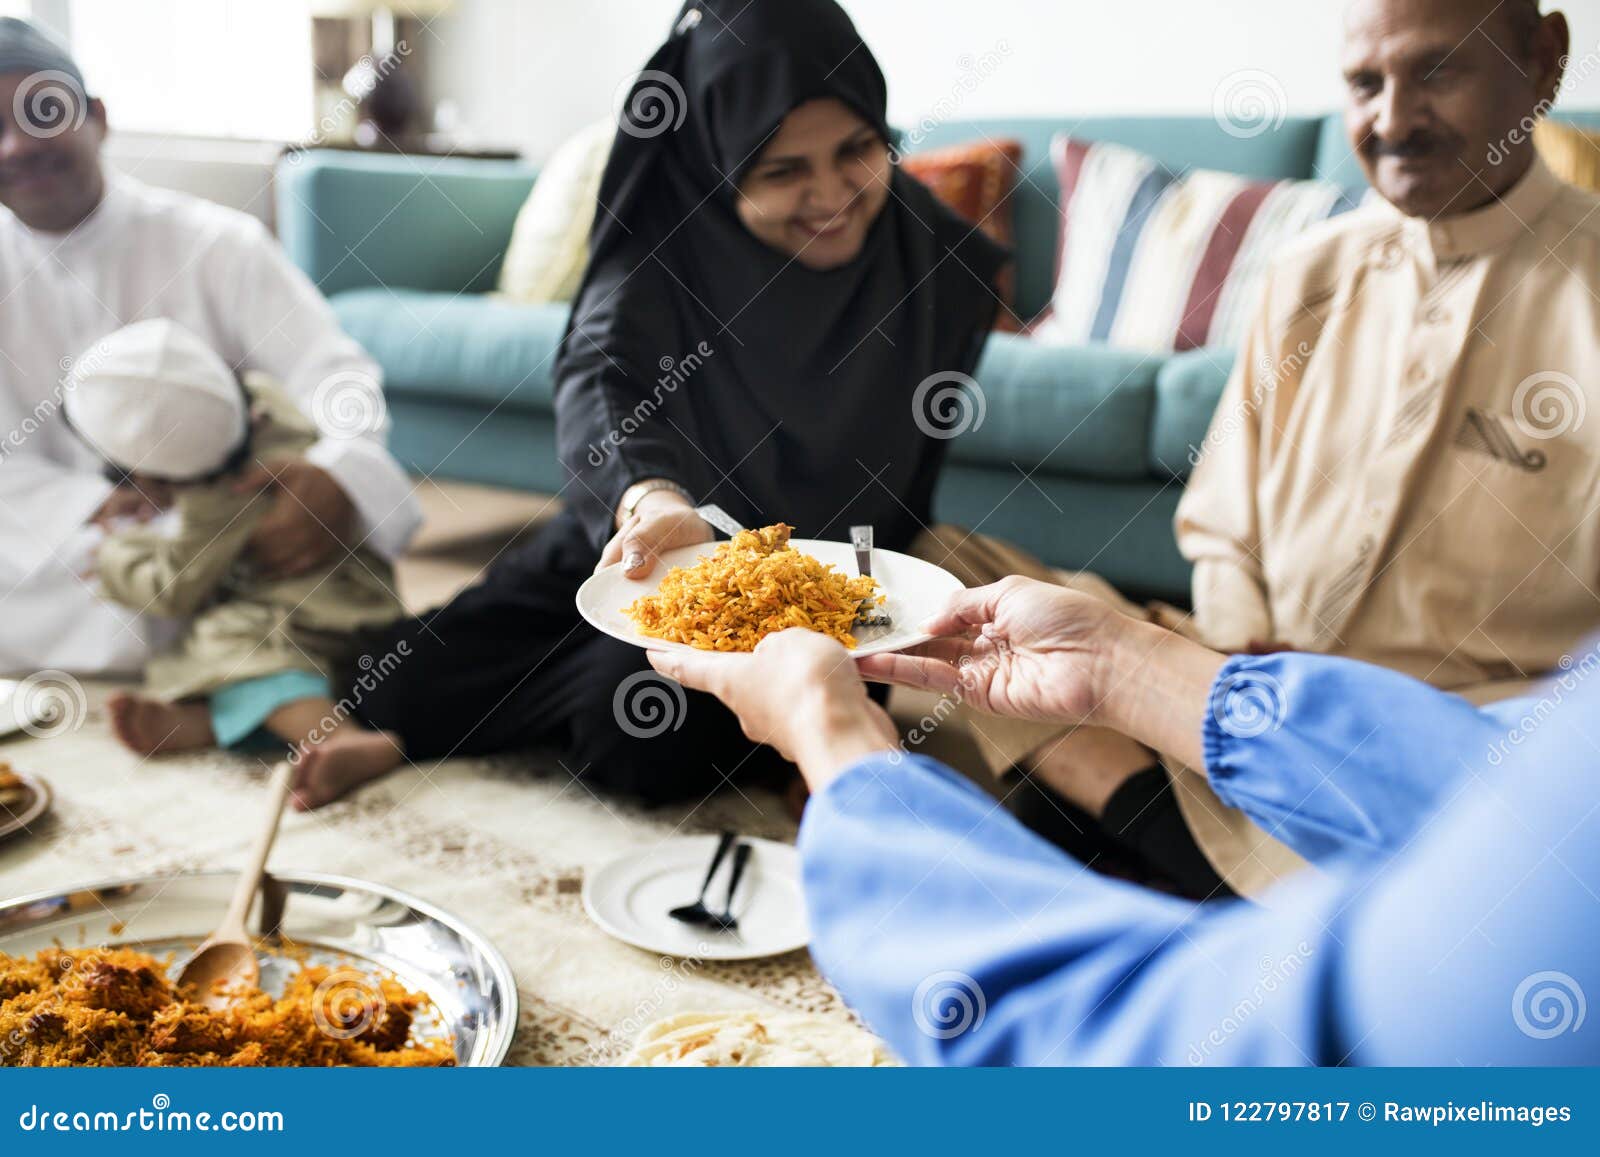 muslim family having dinner on the floor